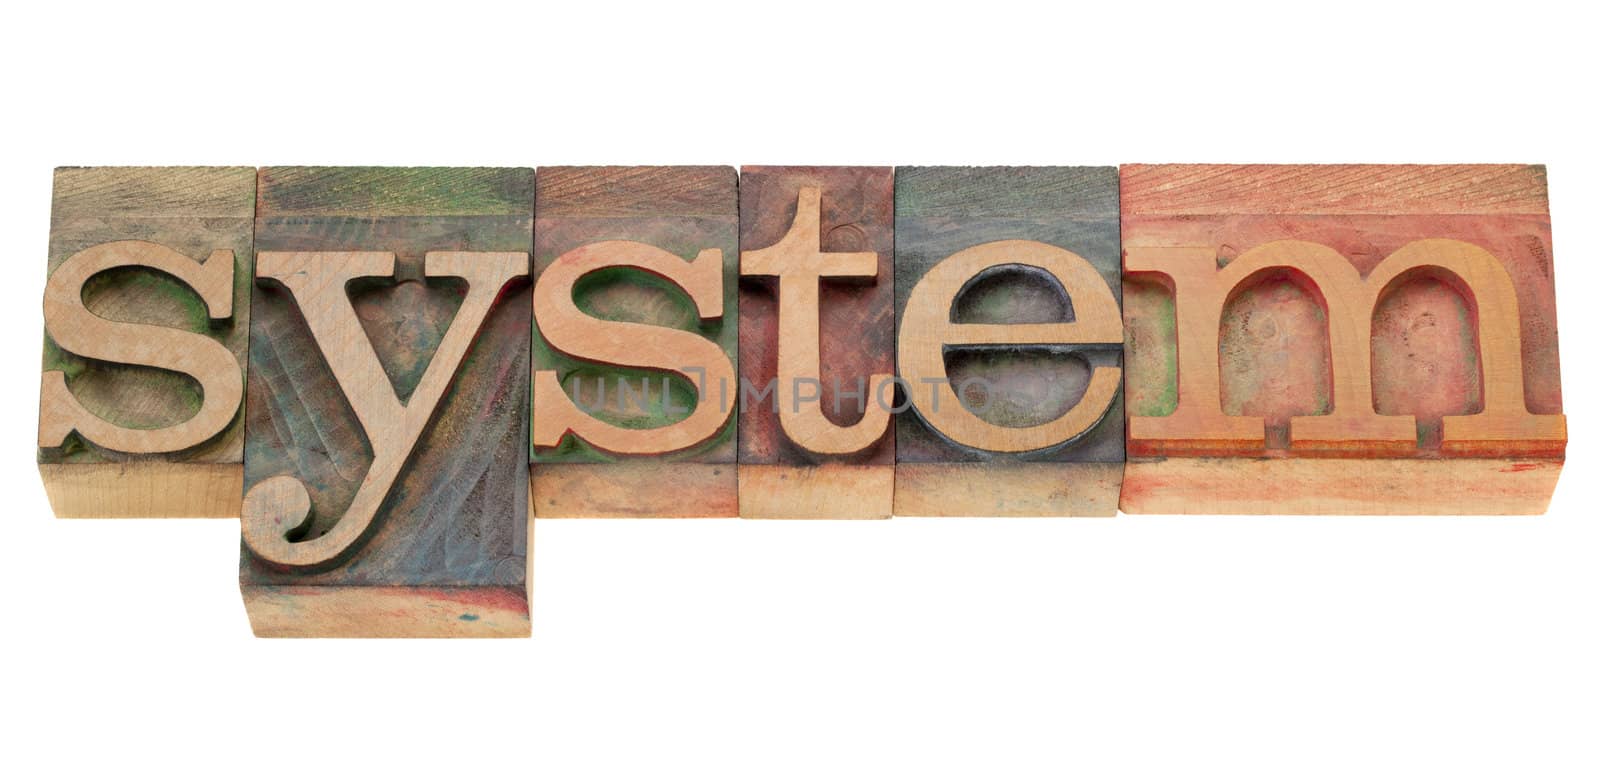 system in wood letterpress type by PixelsAway